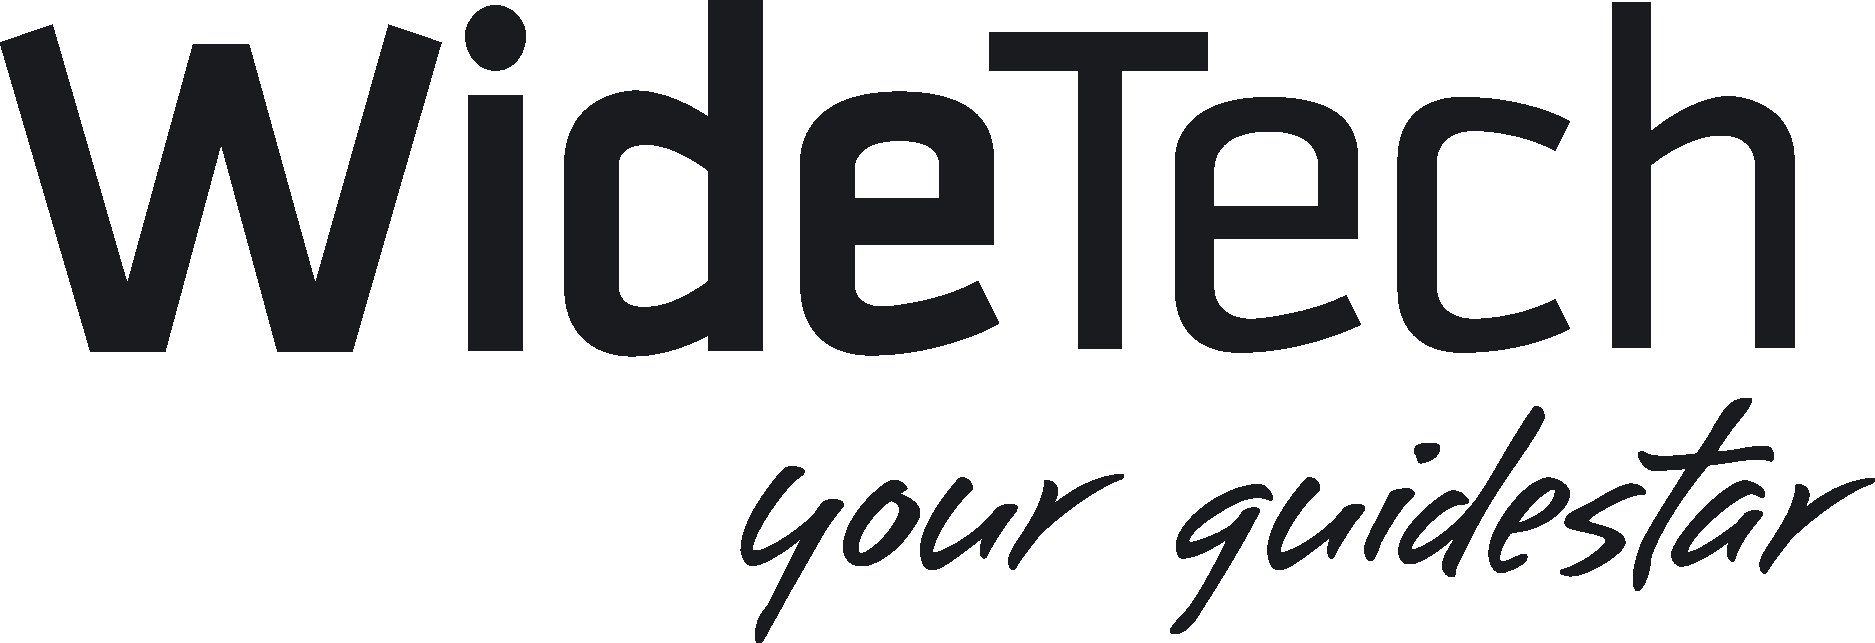 Widetech Group Wordmark Logo Vector